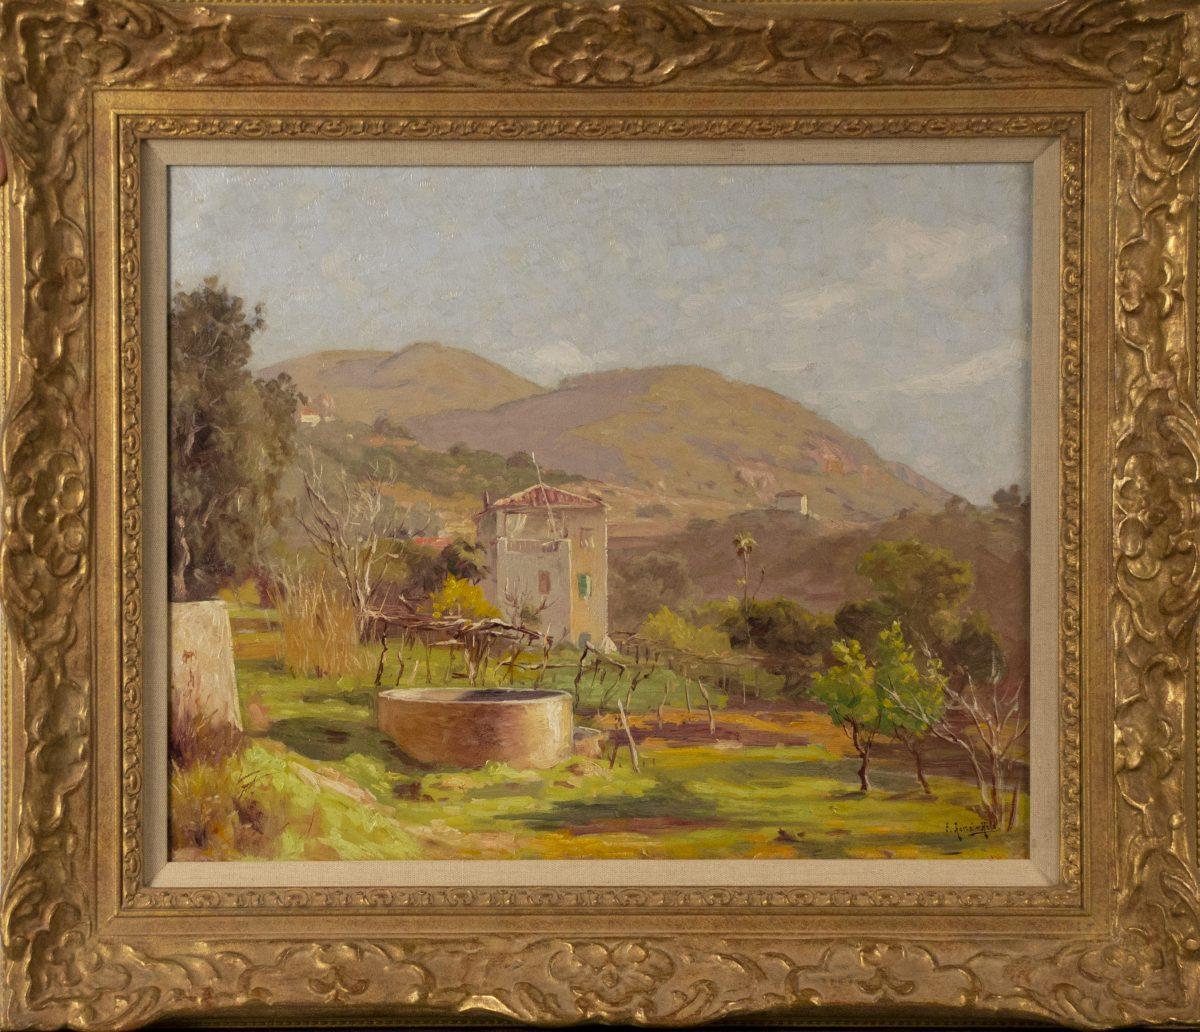 Landscape Painting René Charles Edmond His - Paysage de montagne, Col de Villefranche, sud de la France